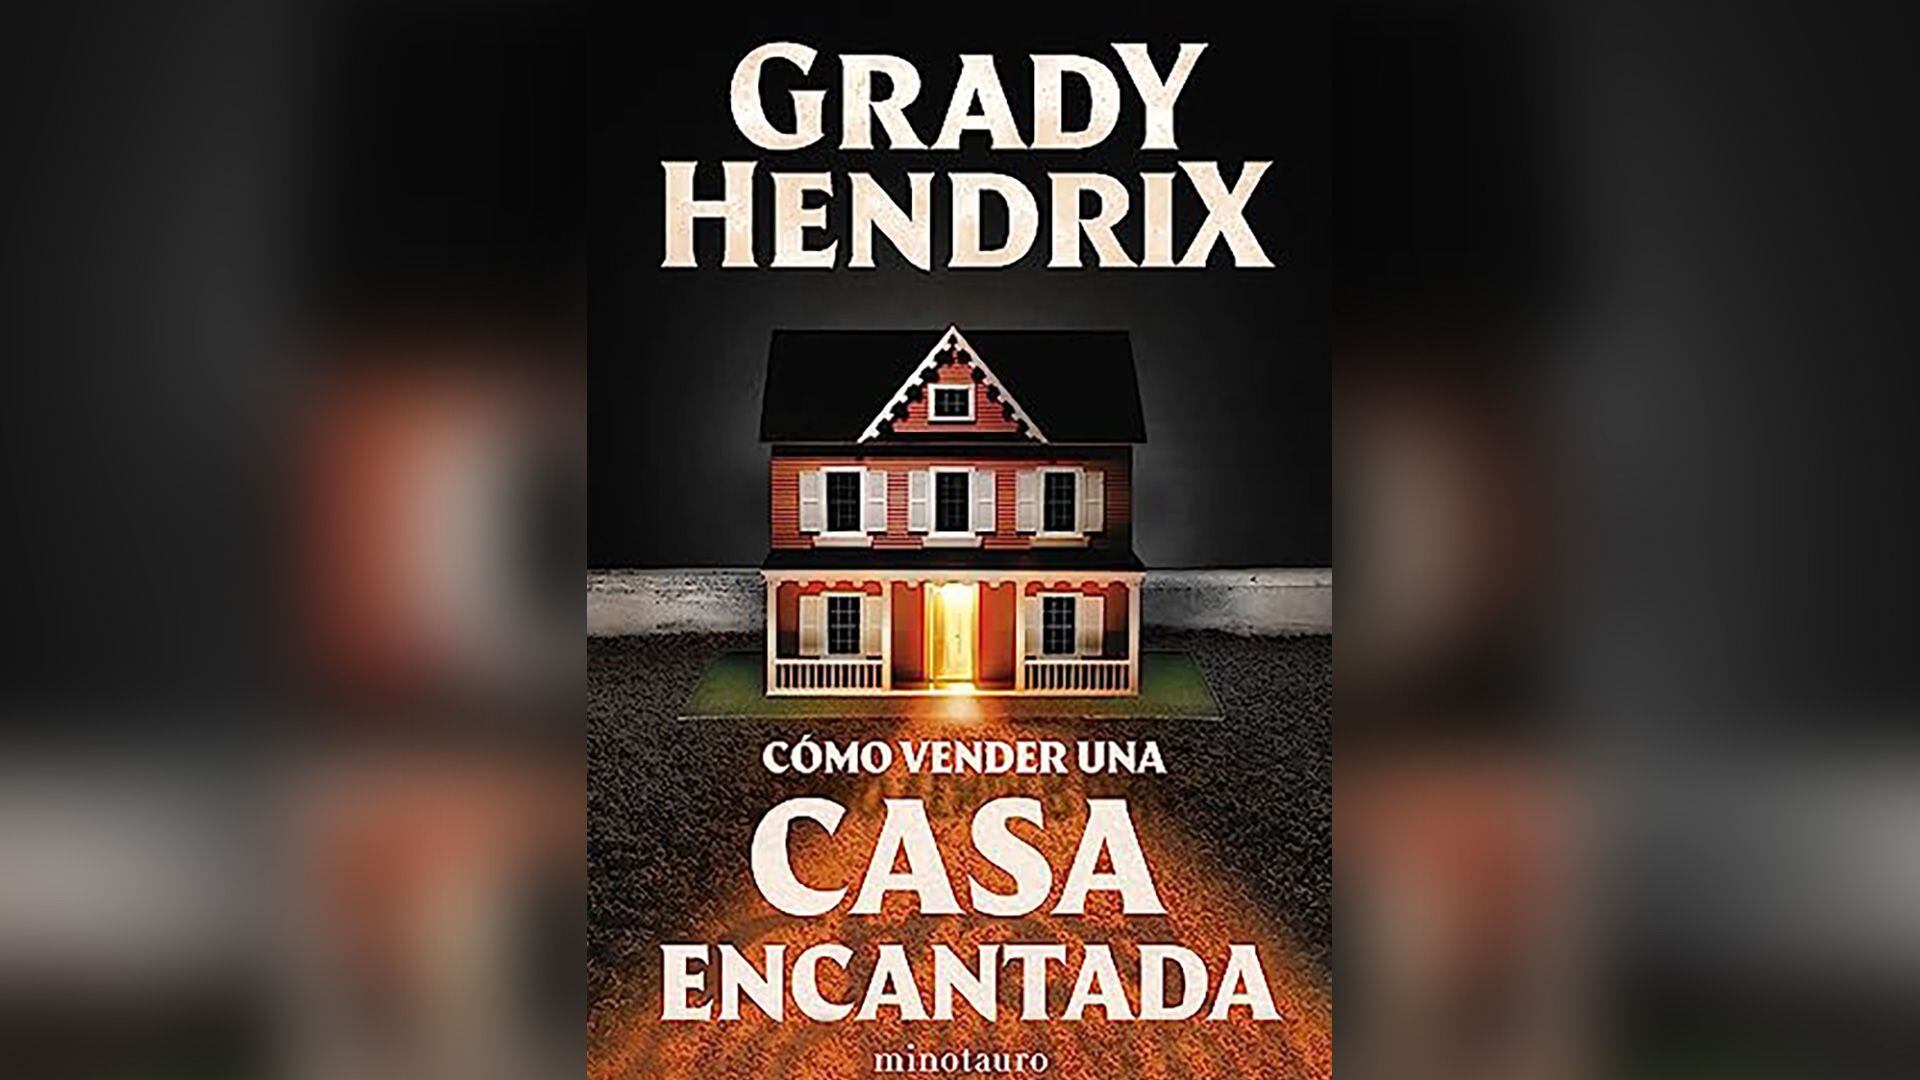 Cómo vender una casa encantada - Grady Hendrix